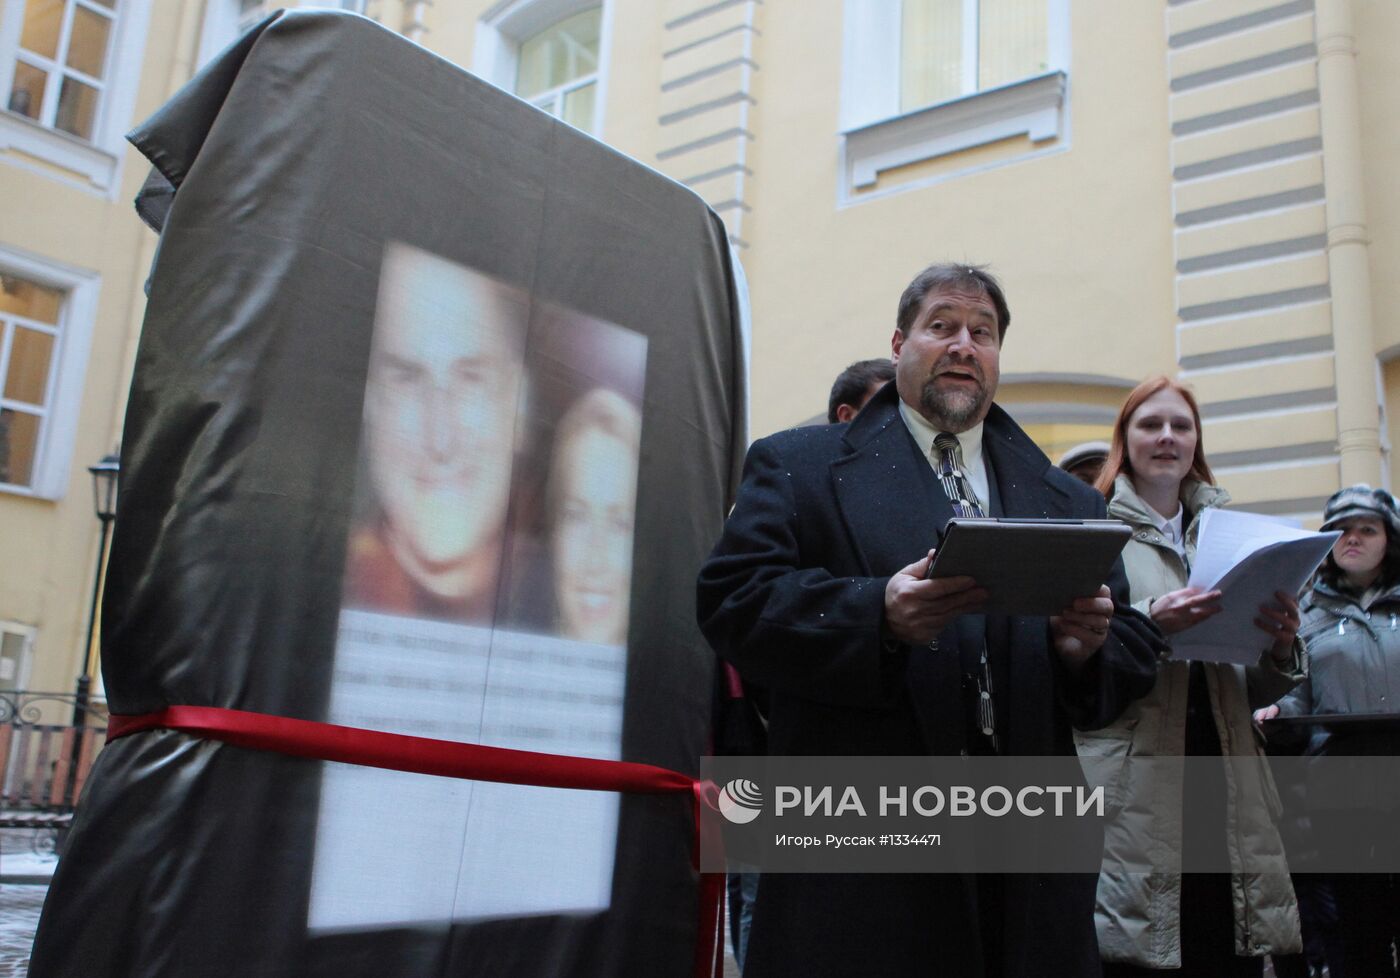 Открытие памятника Стиву Джобсу в Санкт-Петербурге